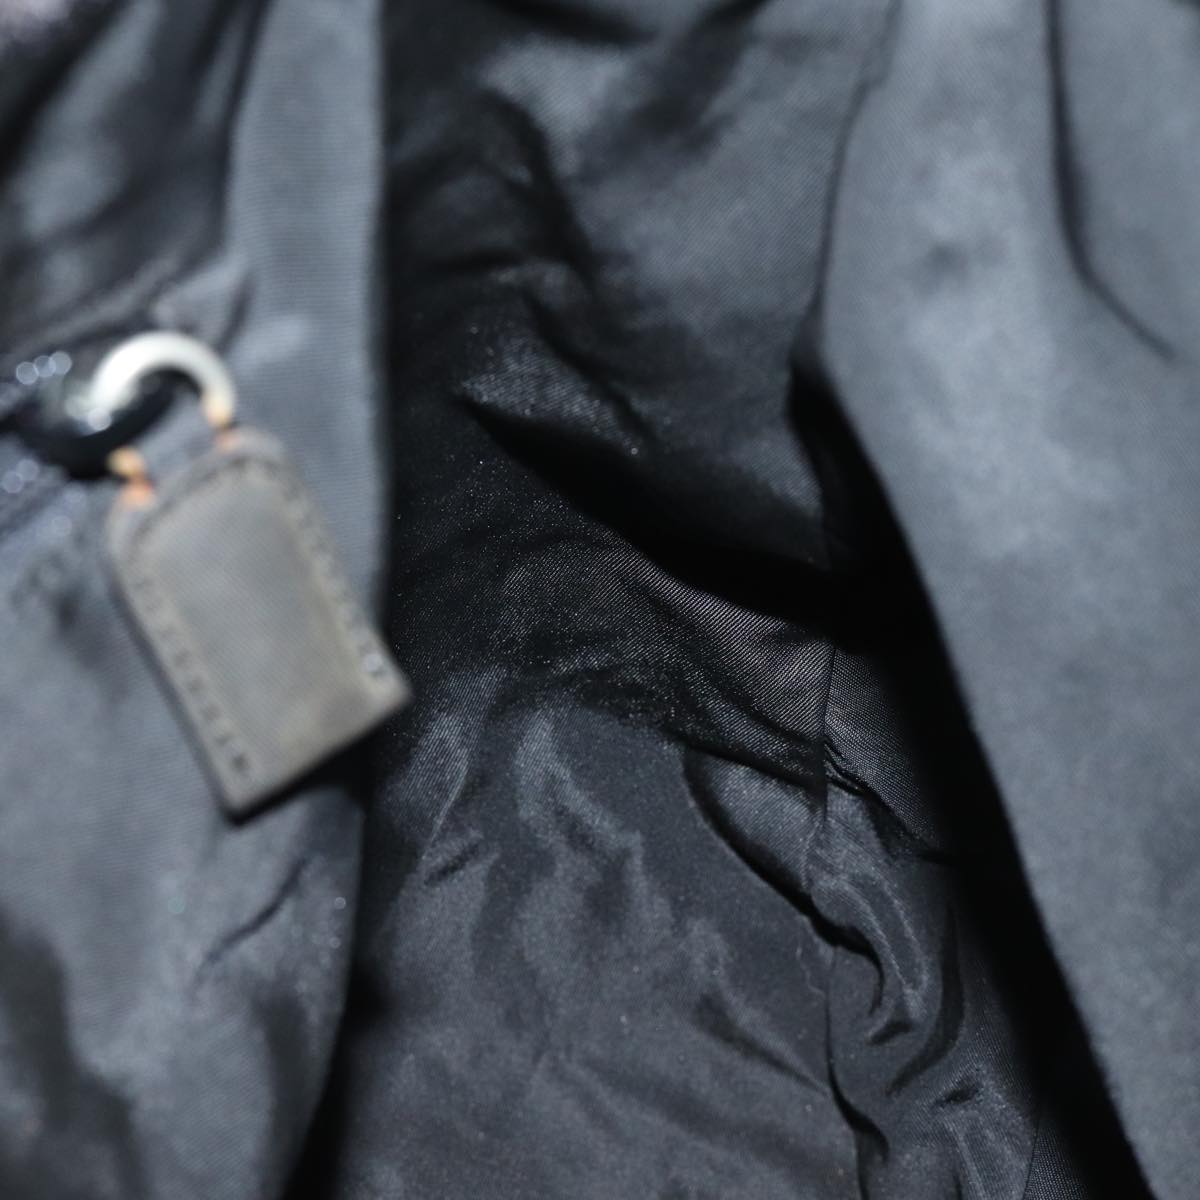 PRADA Shoulder Bag Velor Black Auth bs13612